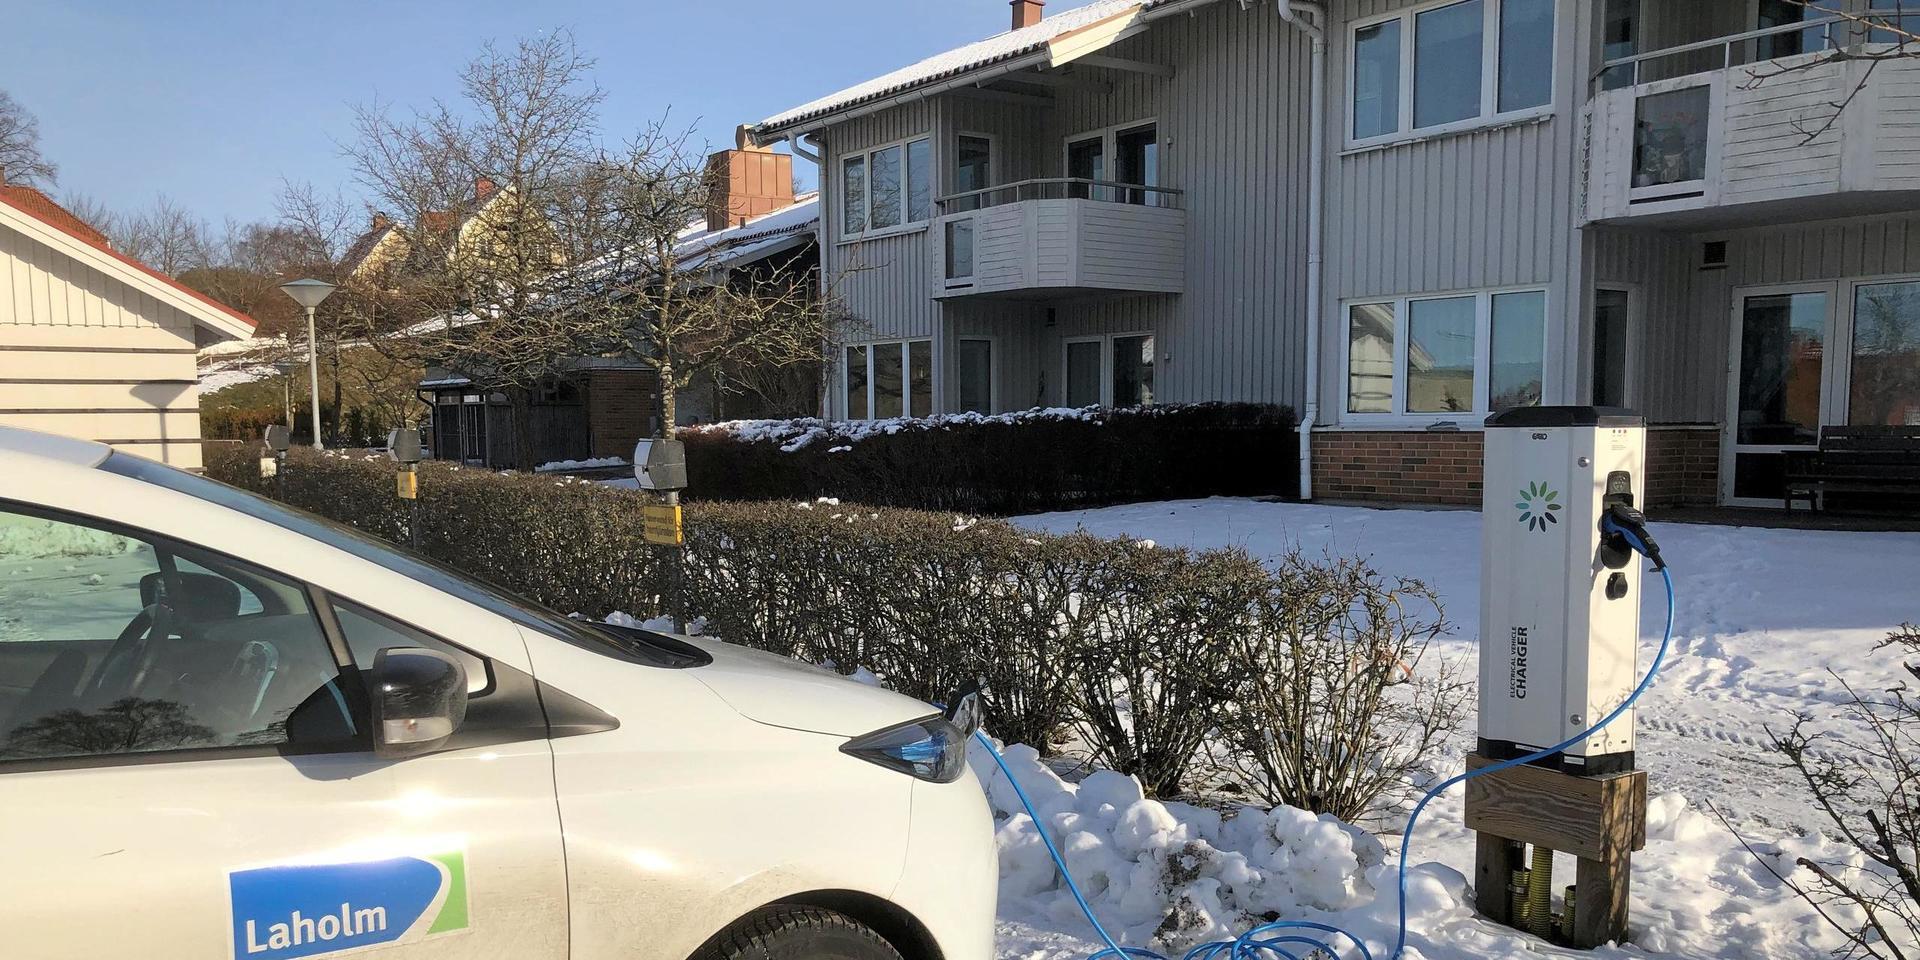 Lingården i Laholm är bas för en av kommunens hemtjänstgrupper. Sex i personalen har testats positivt för covid-19.